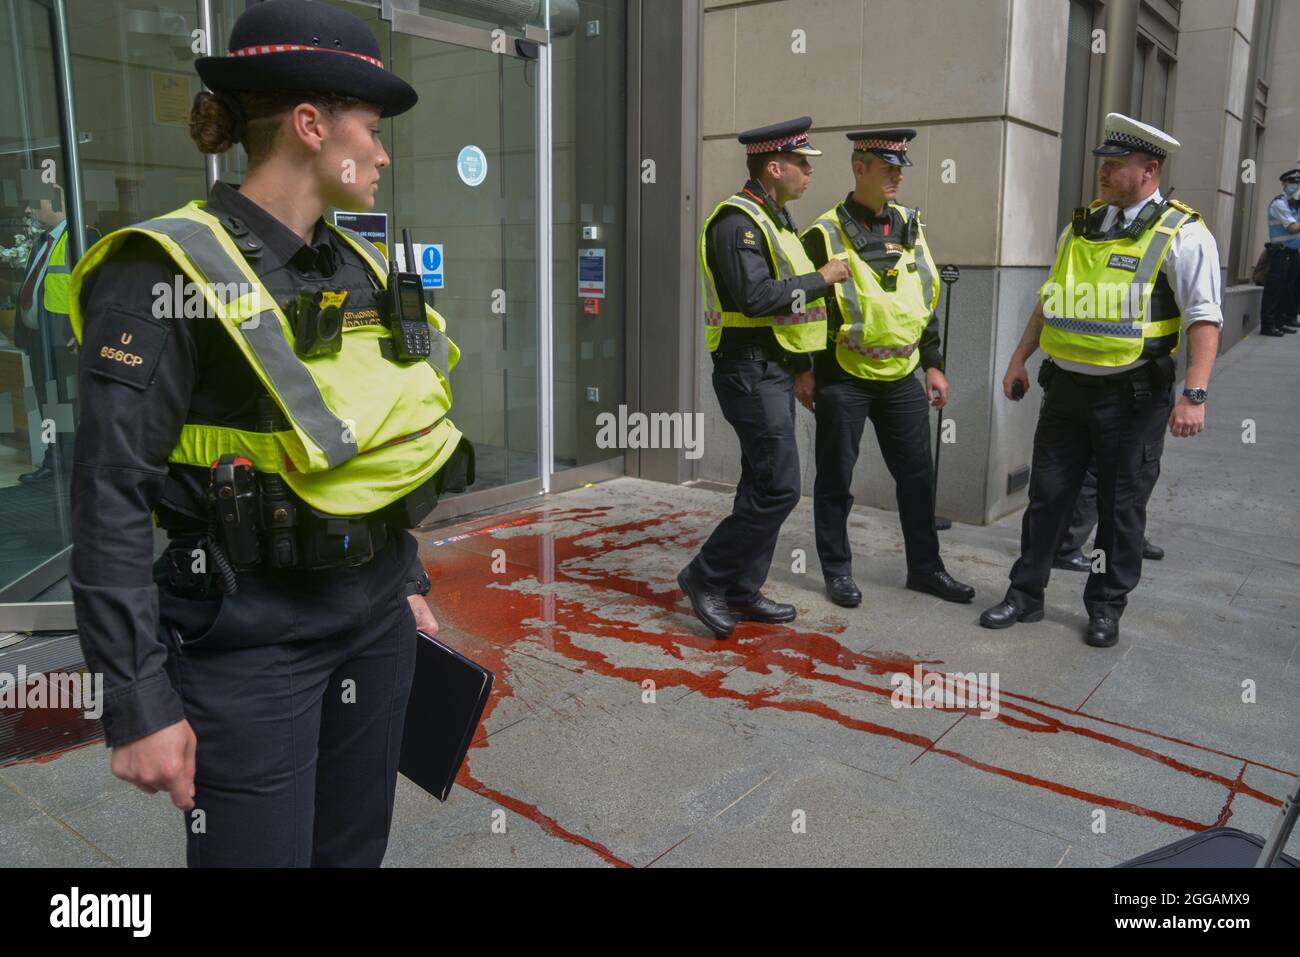 L'activiste de la rébellion d'extinction a jeté de la peinture rouge devant un immeuble de bureaux dans le quartier financier de la City de Londres pendant la Marche de l'argent du sang. Banque D'Images